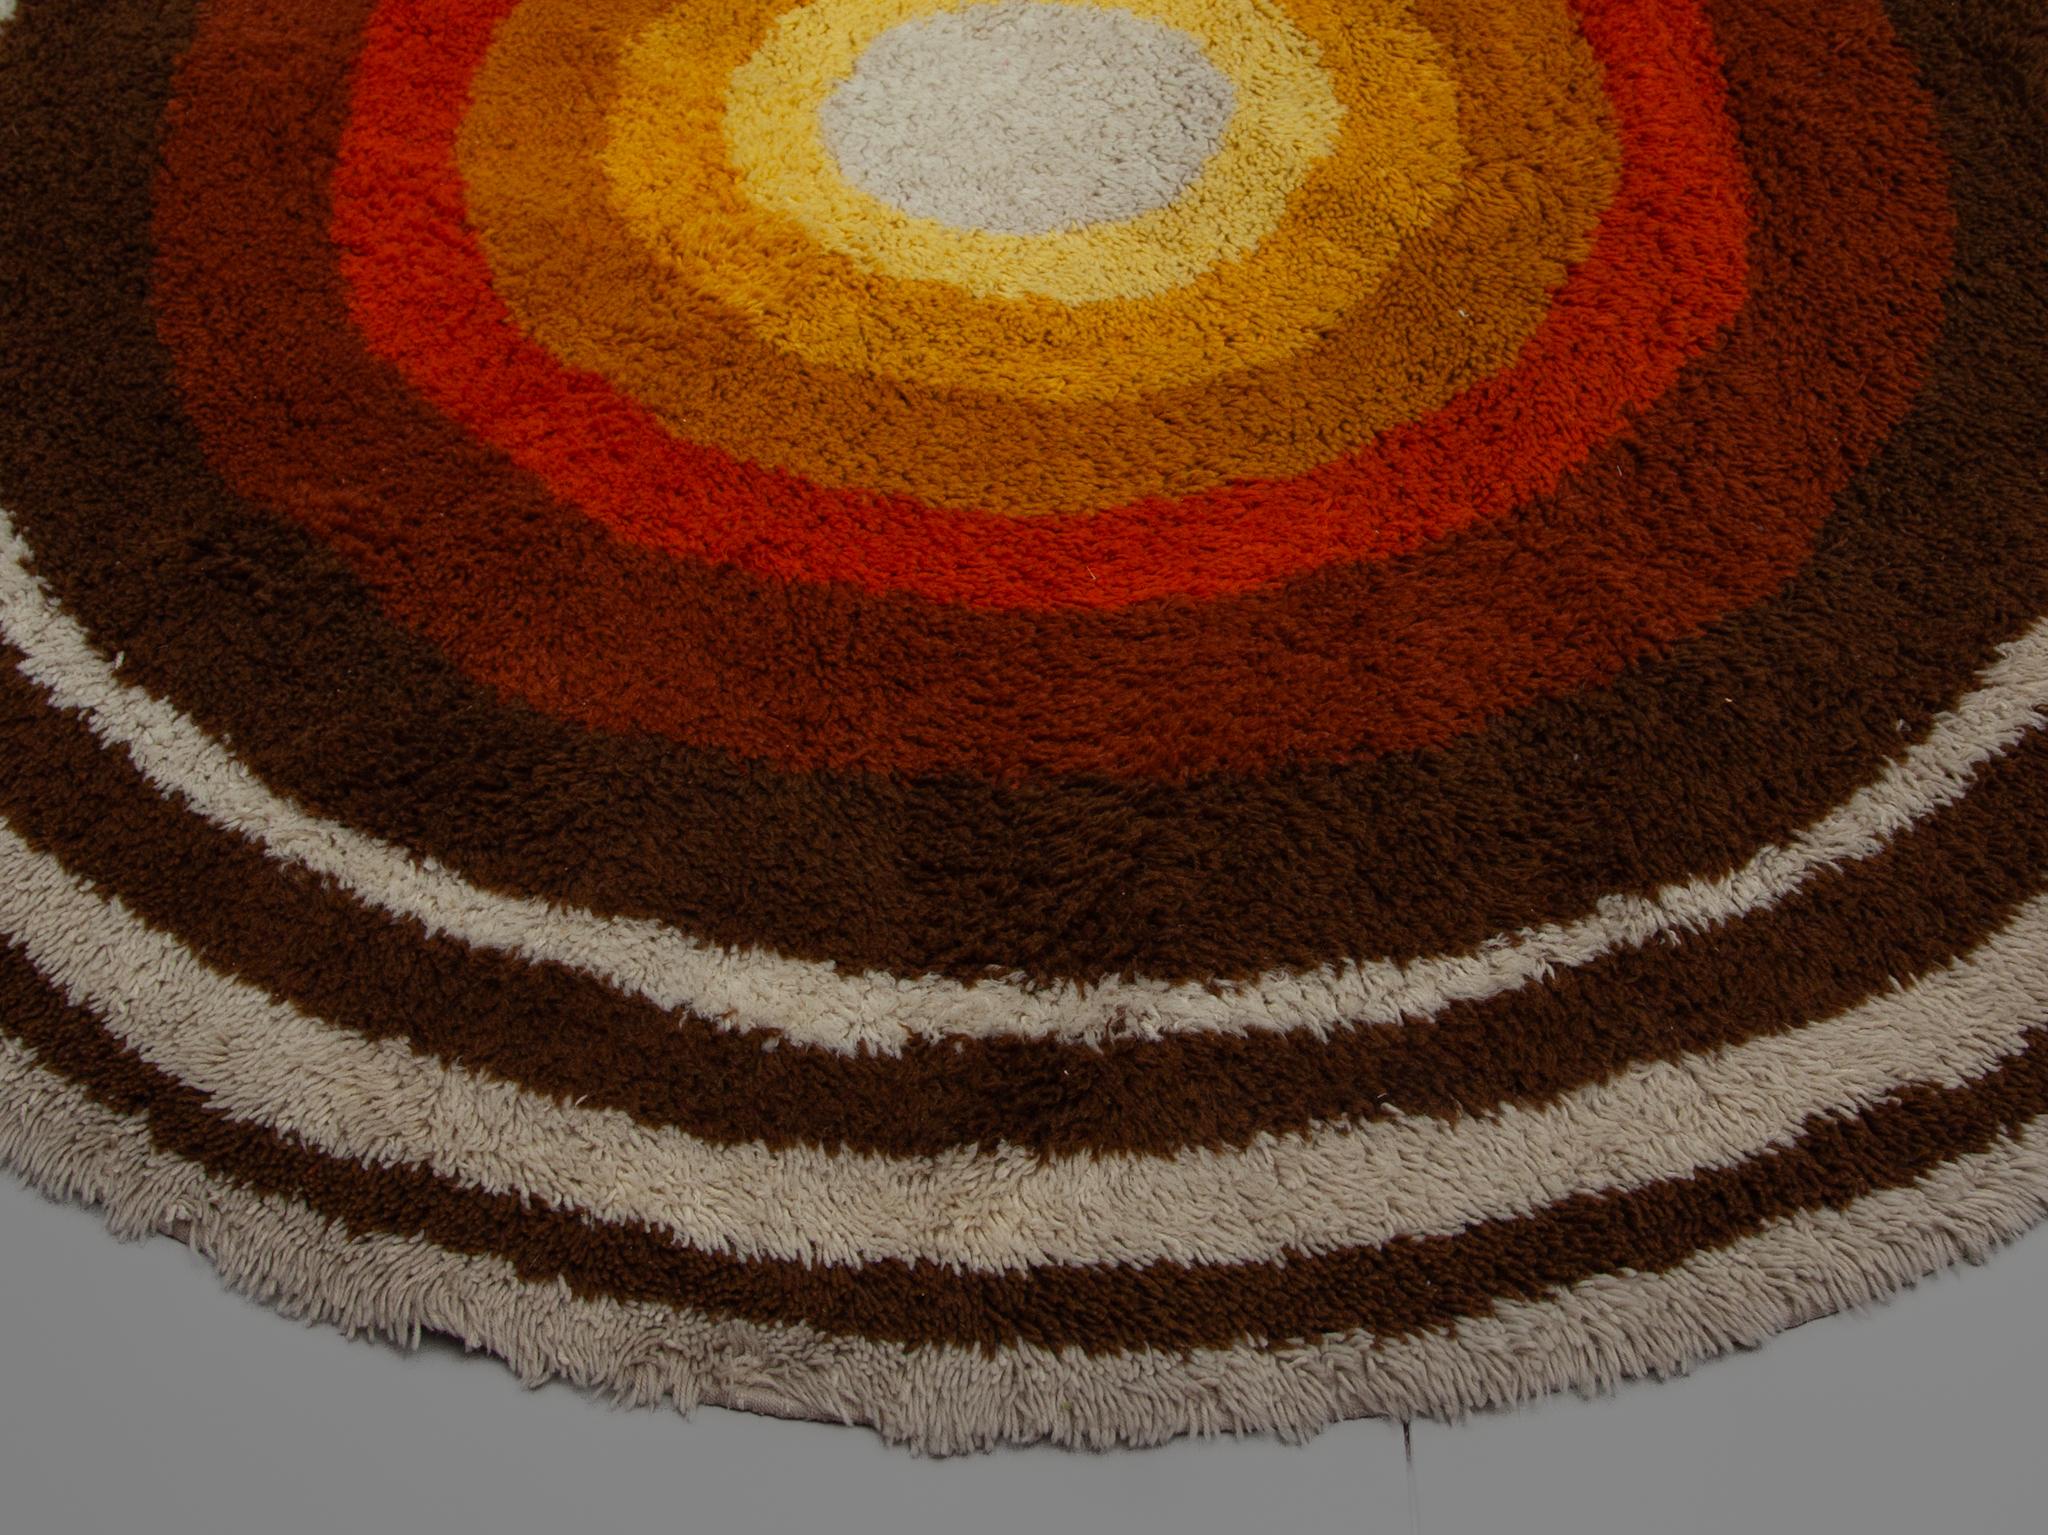 Moderner runder Teppich von Desso aus den 1960er Jahren, entworfen in den Niederlanden, Epoche der Pop-Art. Sie besteht aus Polyacrylwolle und ist noch in einem sehr guten Vintage-Zustand. Schöne helle Farben in verschiedenen Braun-, Orange- und